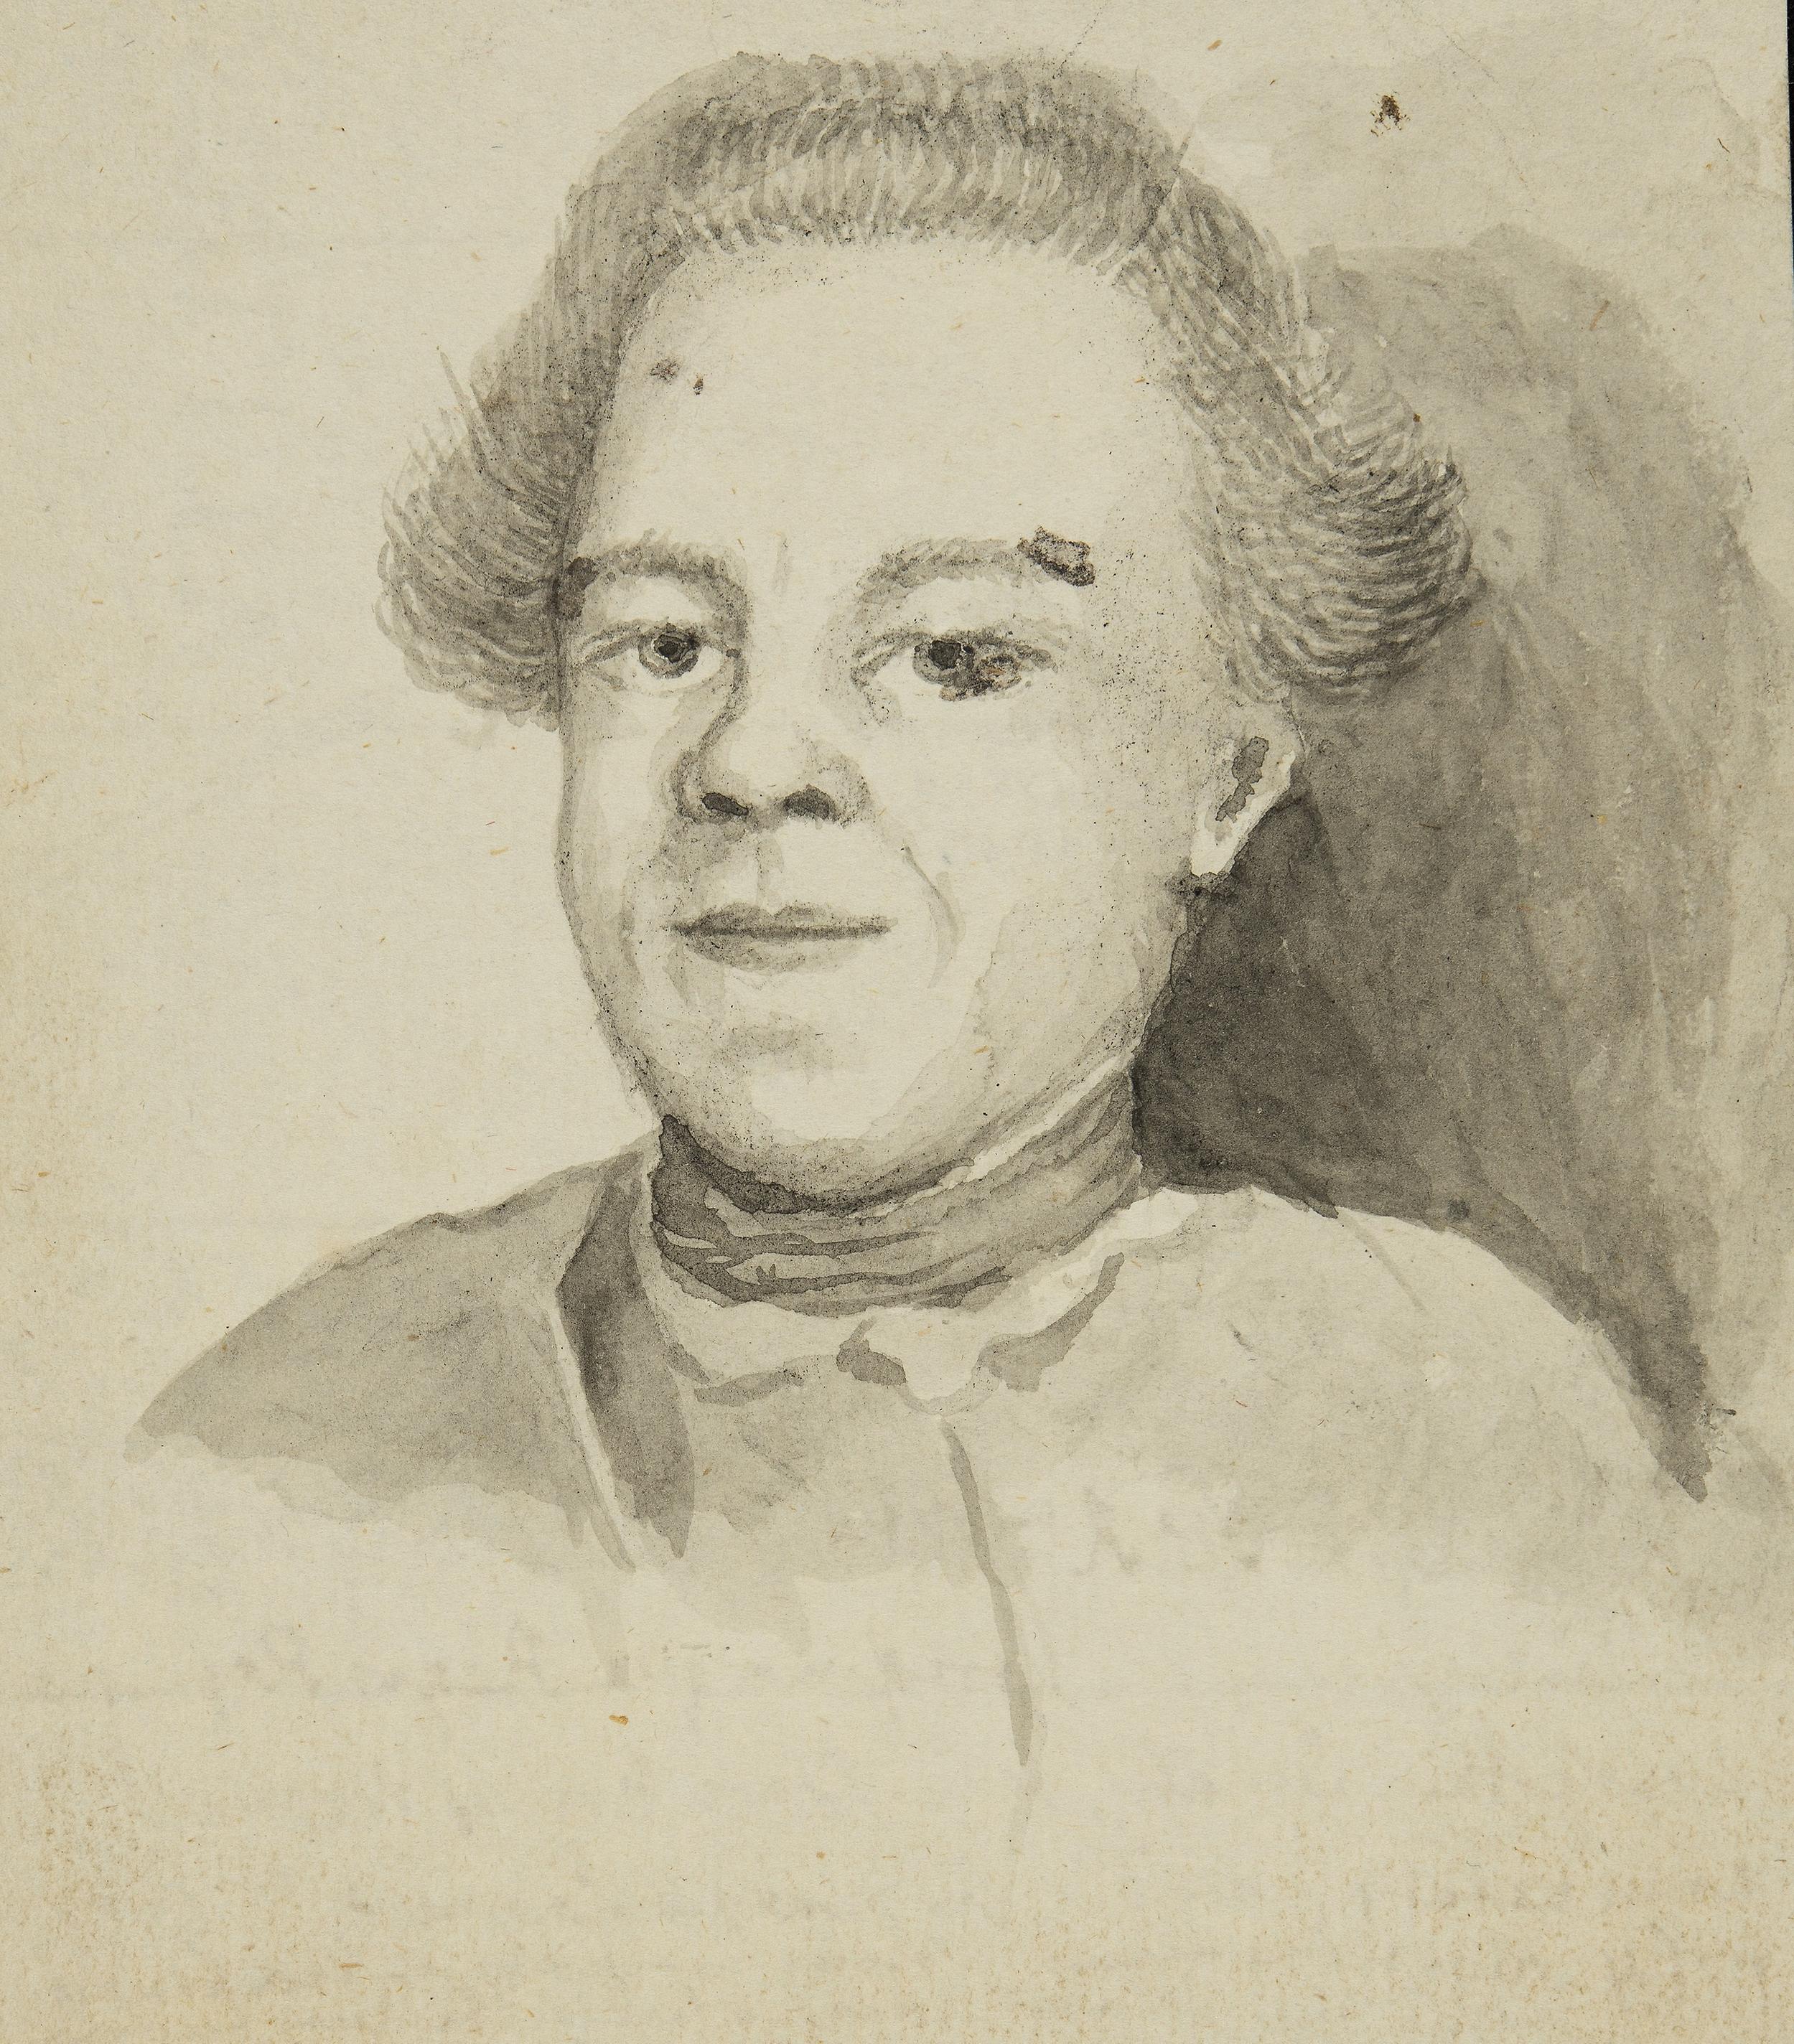 Akvarell i gråtoner som föreställer en ung man med hög panna.